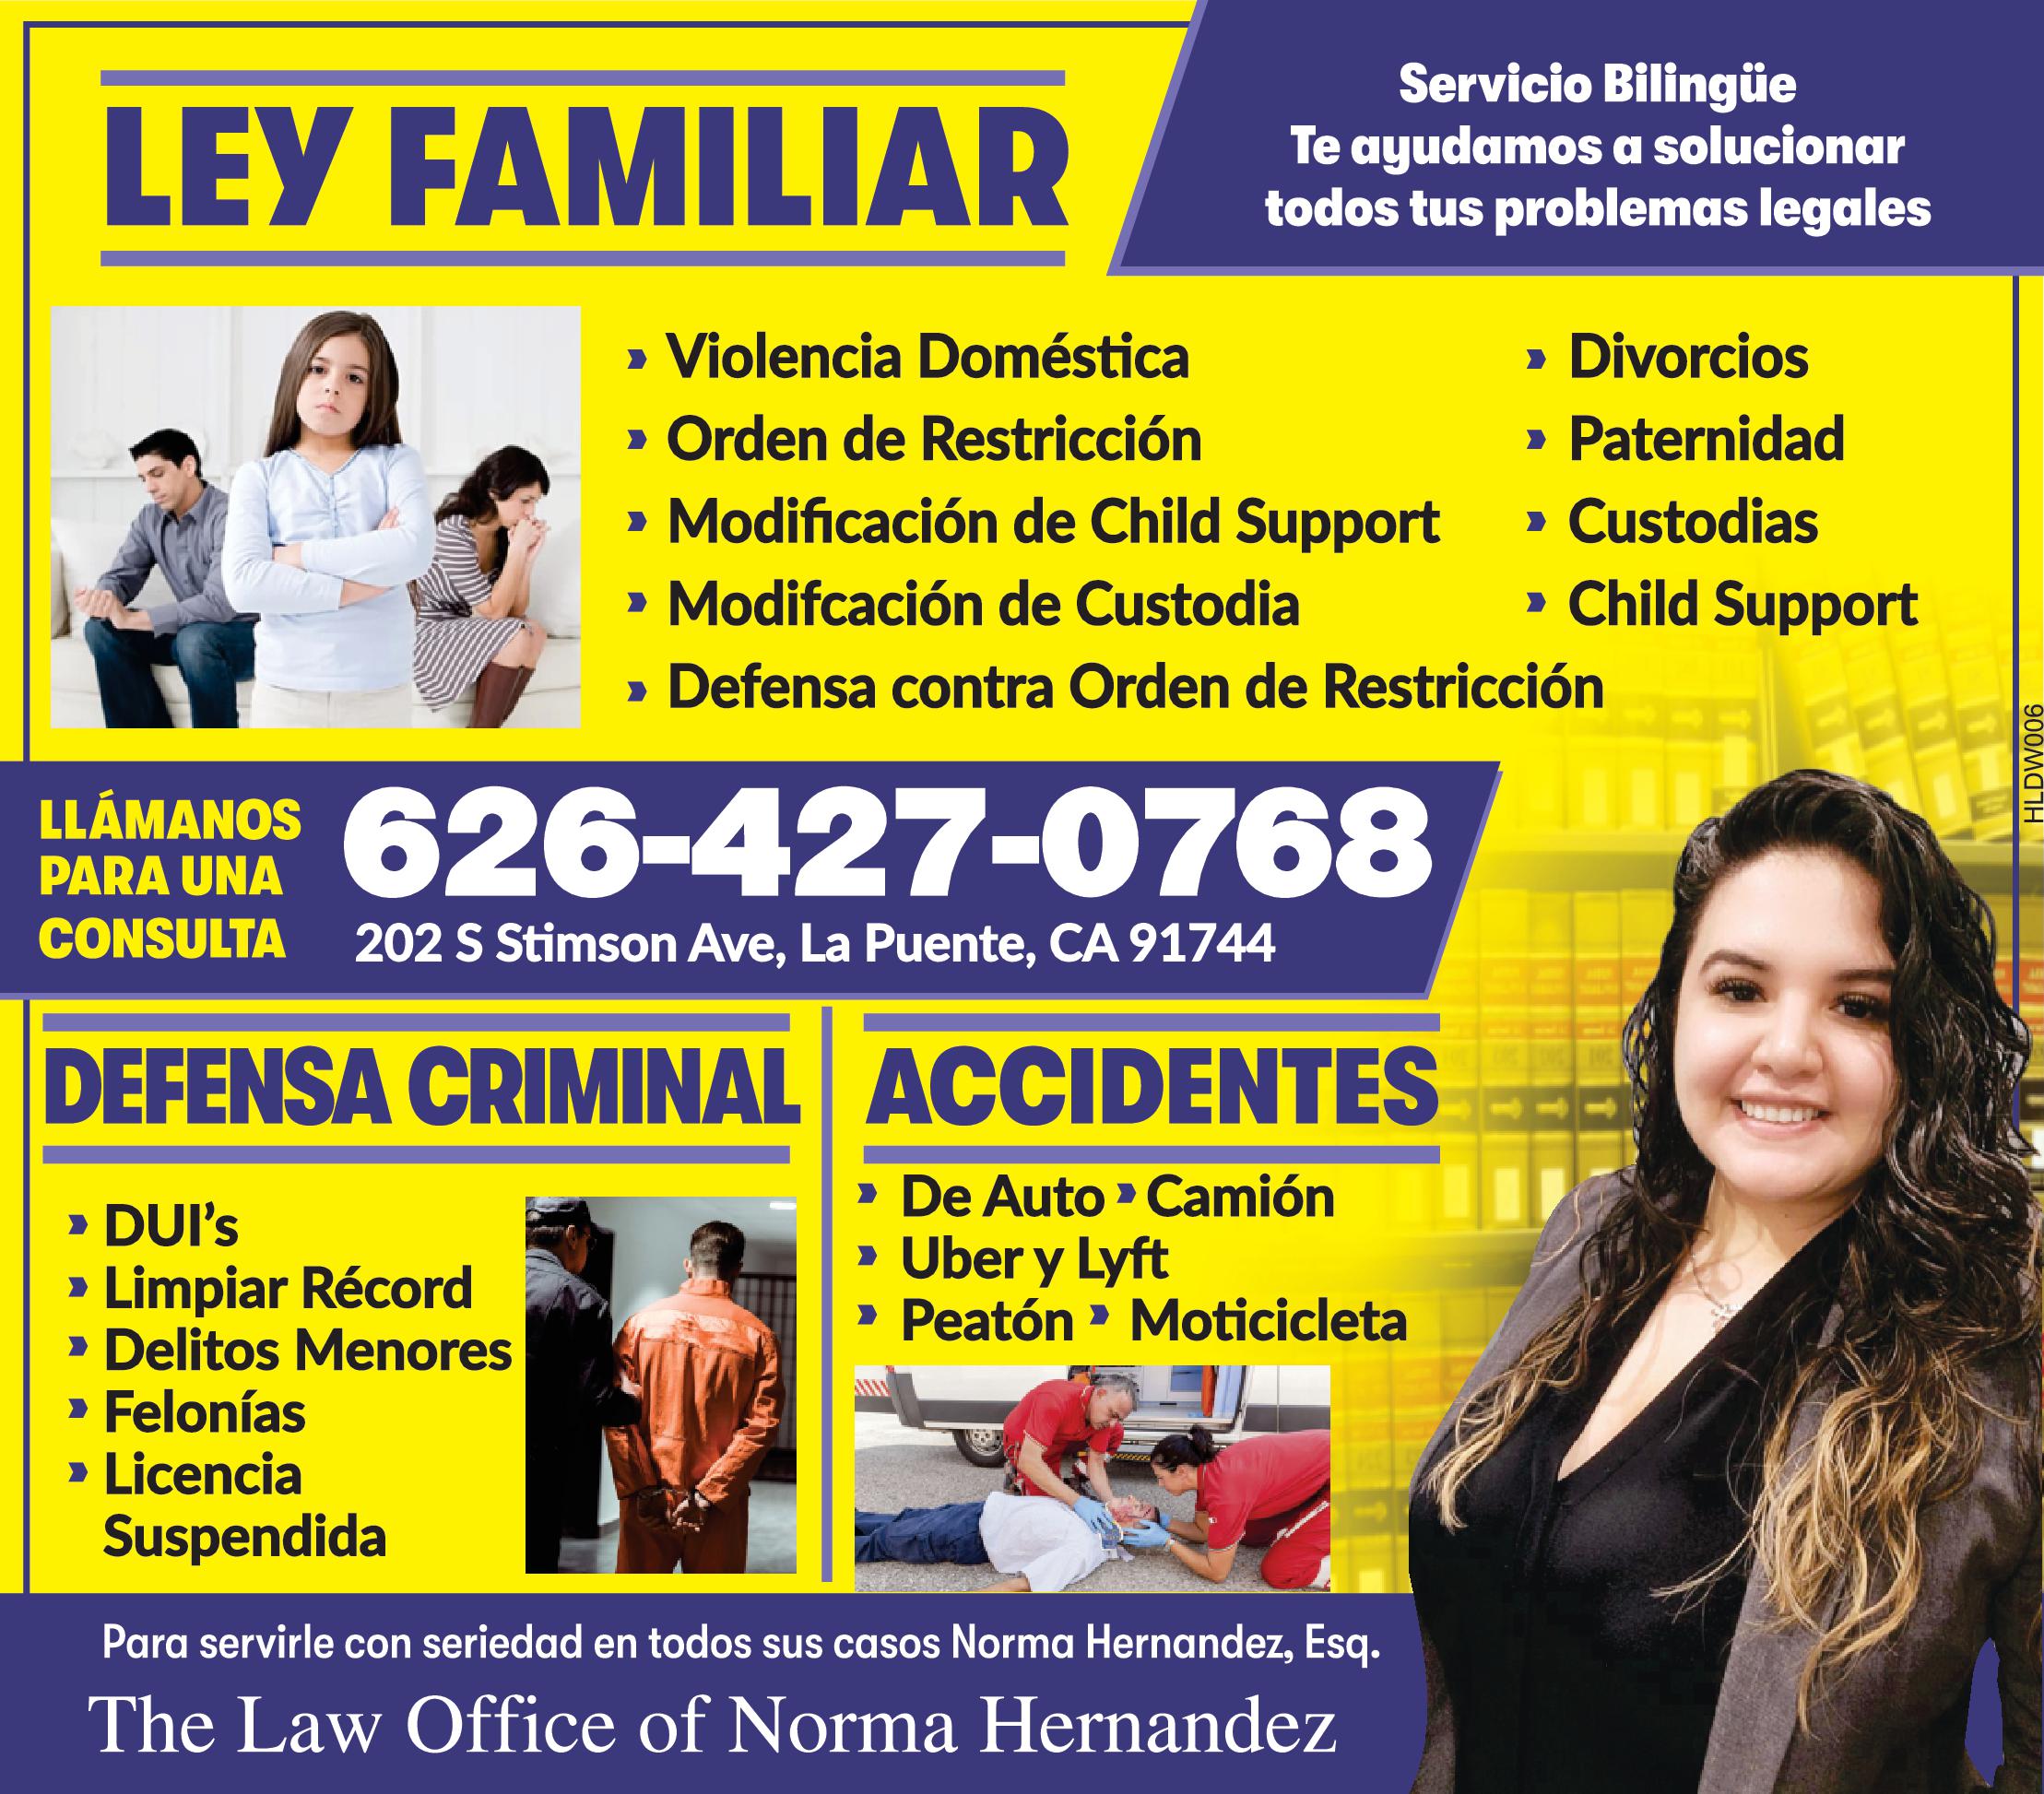 LEY FAMILIAR Servicio Bilingüe Te ayudamos solucionar todos tus problemas legales LLÁMANOS 626-427-0768 PARA UNA CONSULTA 202 Stimson Ave La Puente CA 91744 DUI